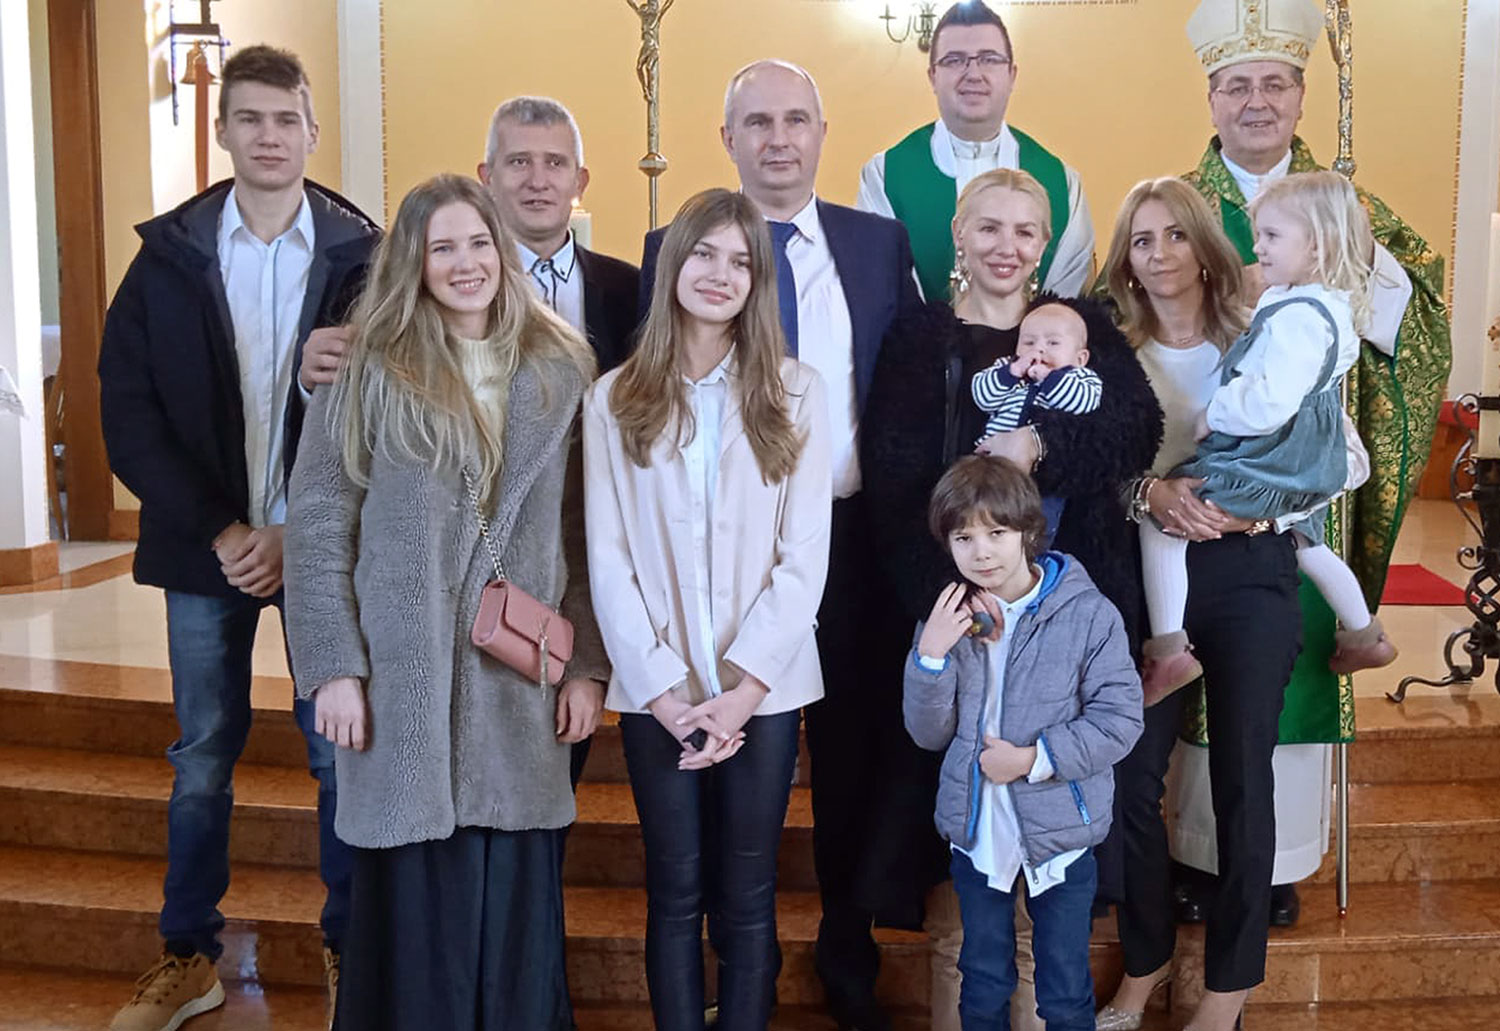 Šesto krštenje djeteta u obitelji Vrbančić